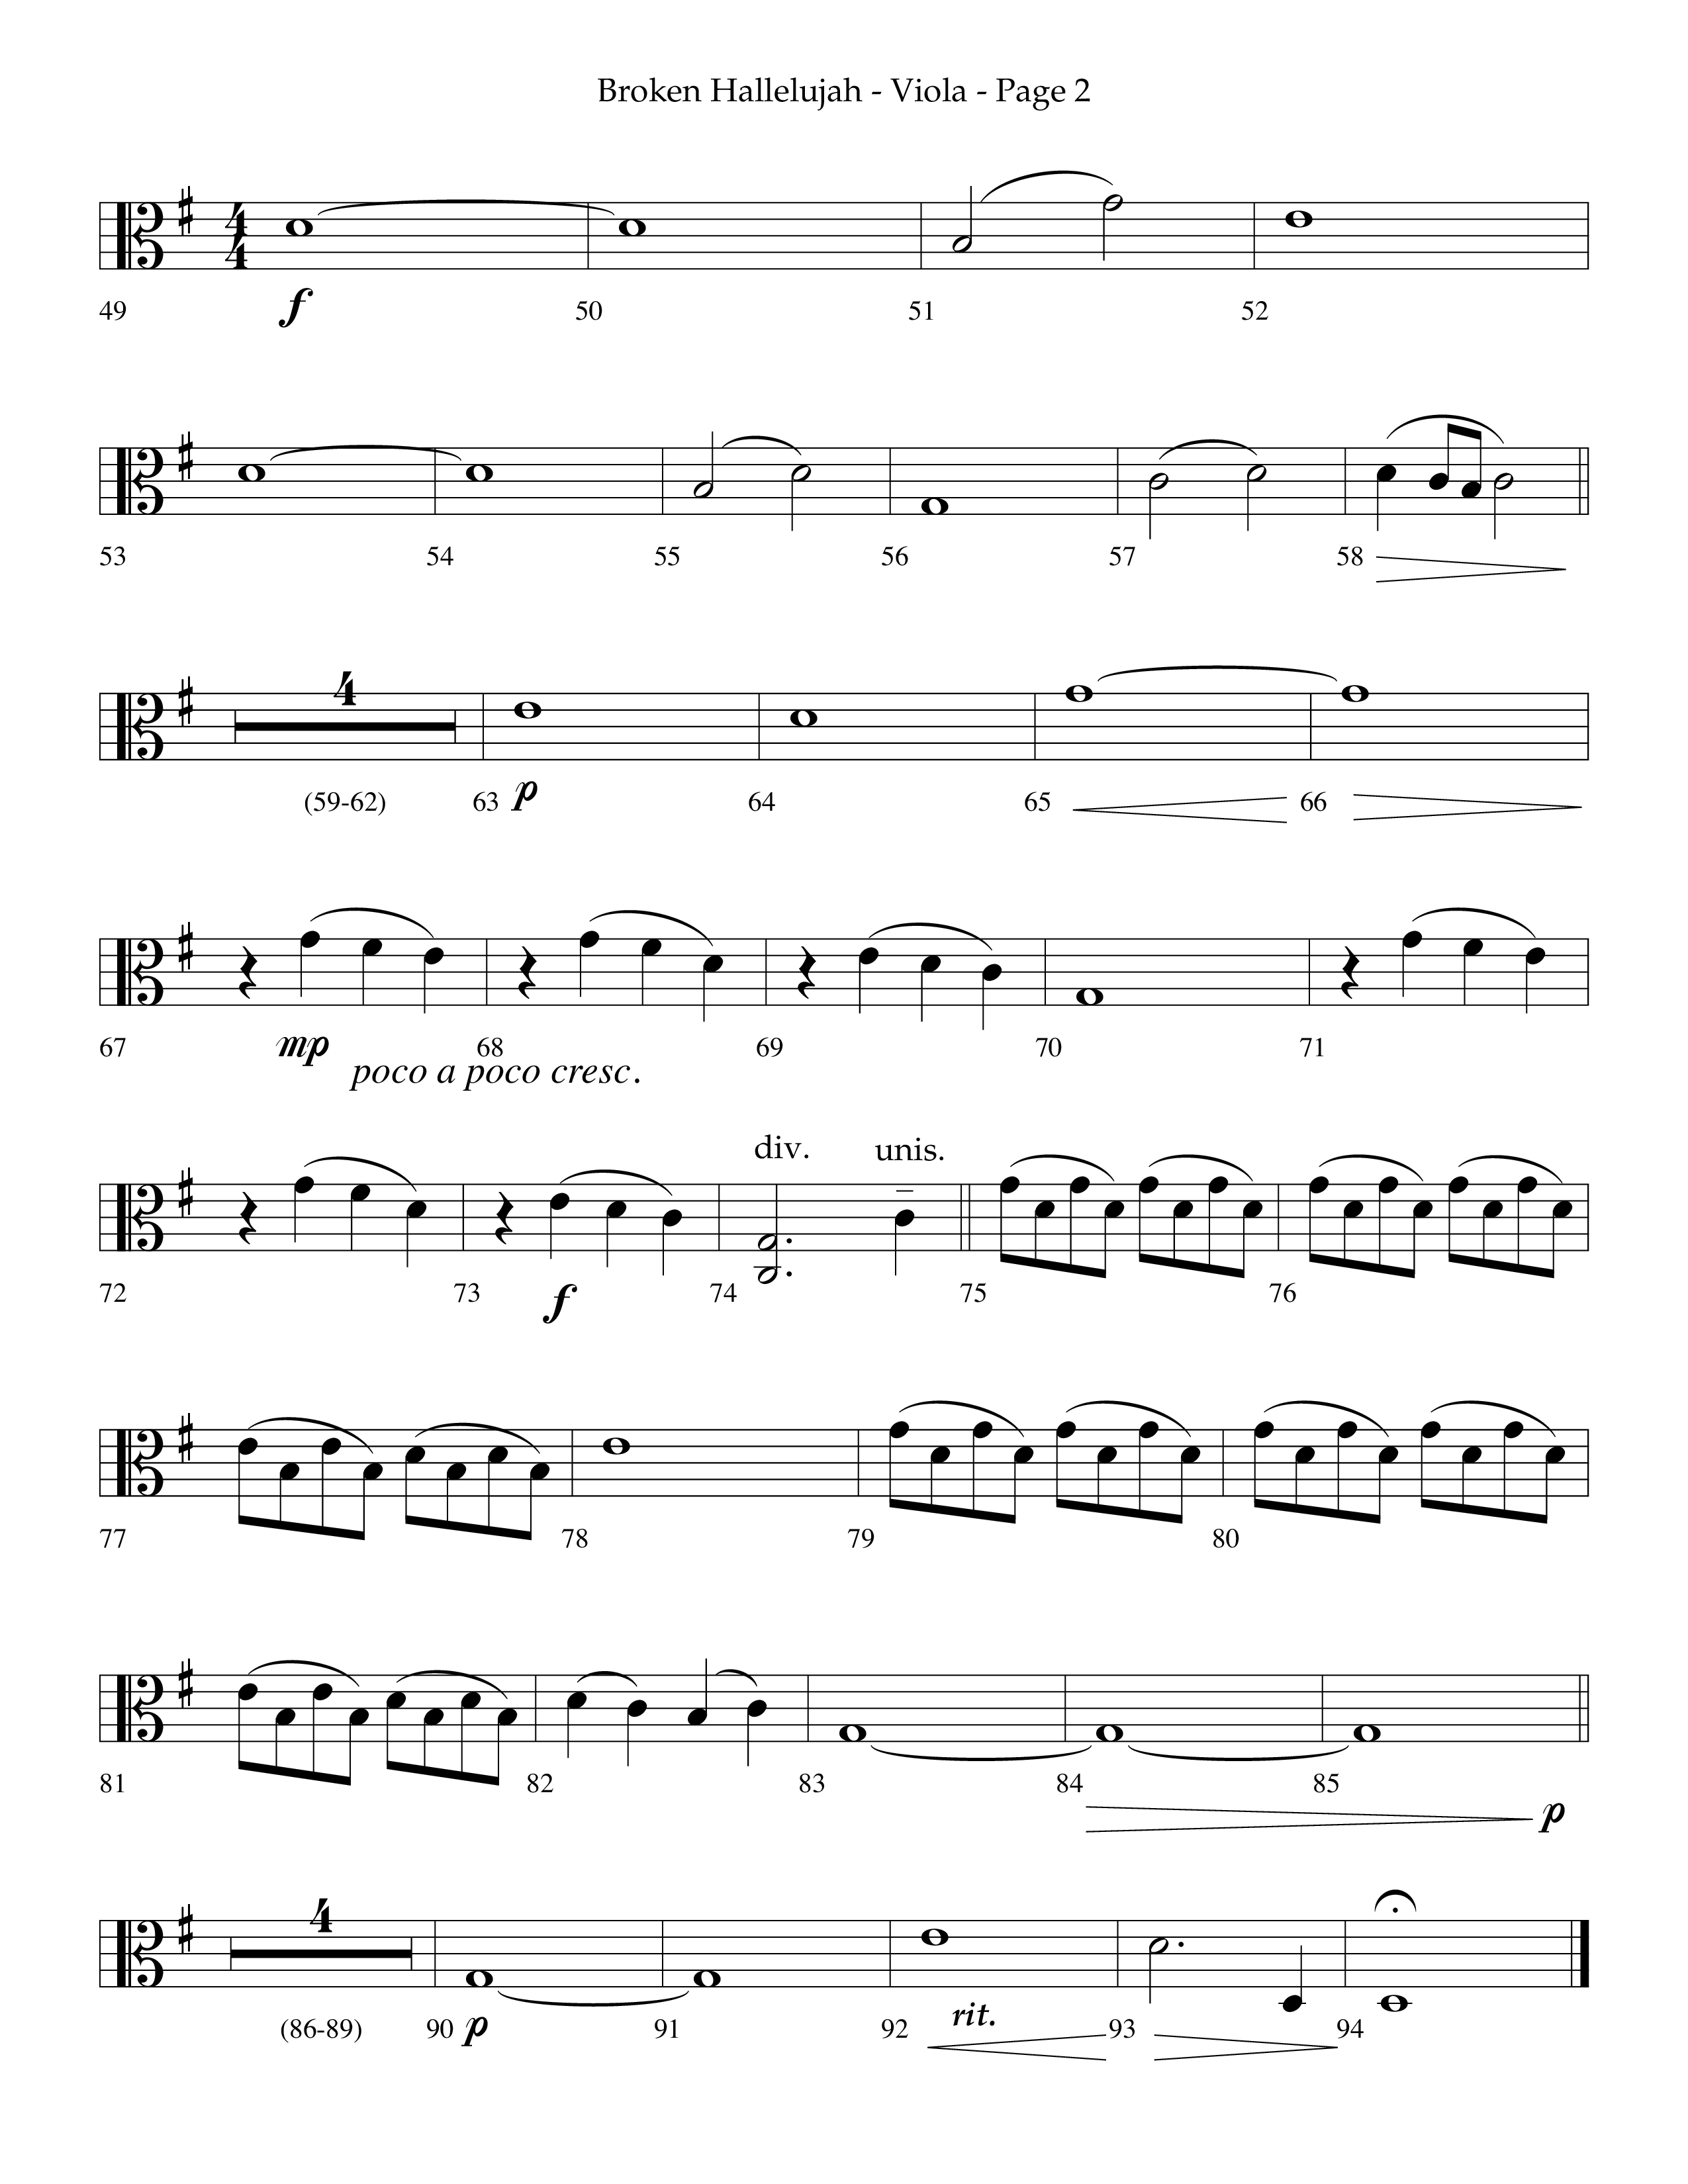 Broken Hallelujah (Choral Anthem SATB) Viola (Lifeway Choral / Arr. Phillip Keveren)